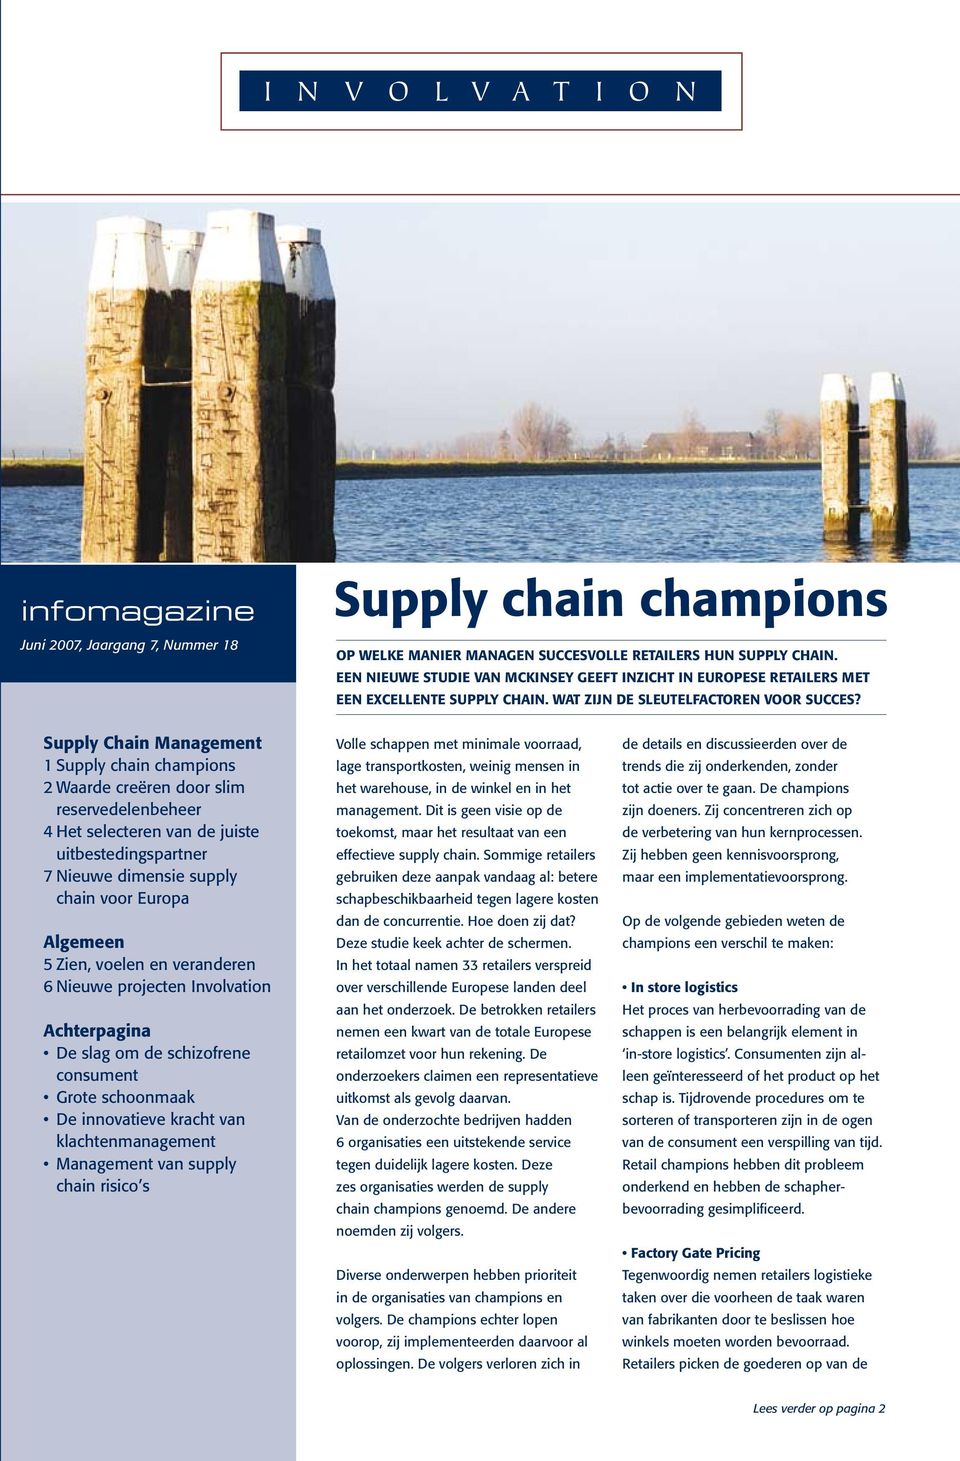 Supply Chain Management 1 Supply chain champions 2 Waarde creëren door slim reservedelenbeheer 4 Het selecteren van de juiste uitbestedingspartner 7 Nieuwe dimensie supply chain voor Europa Algemeen